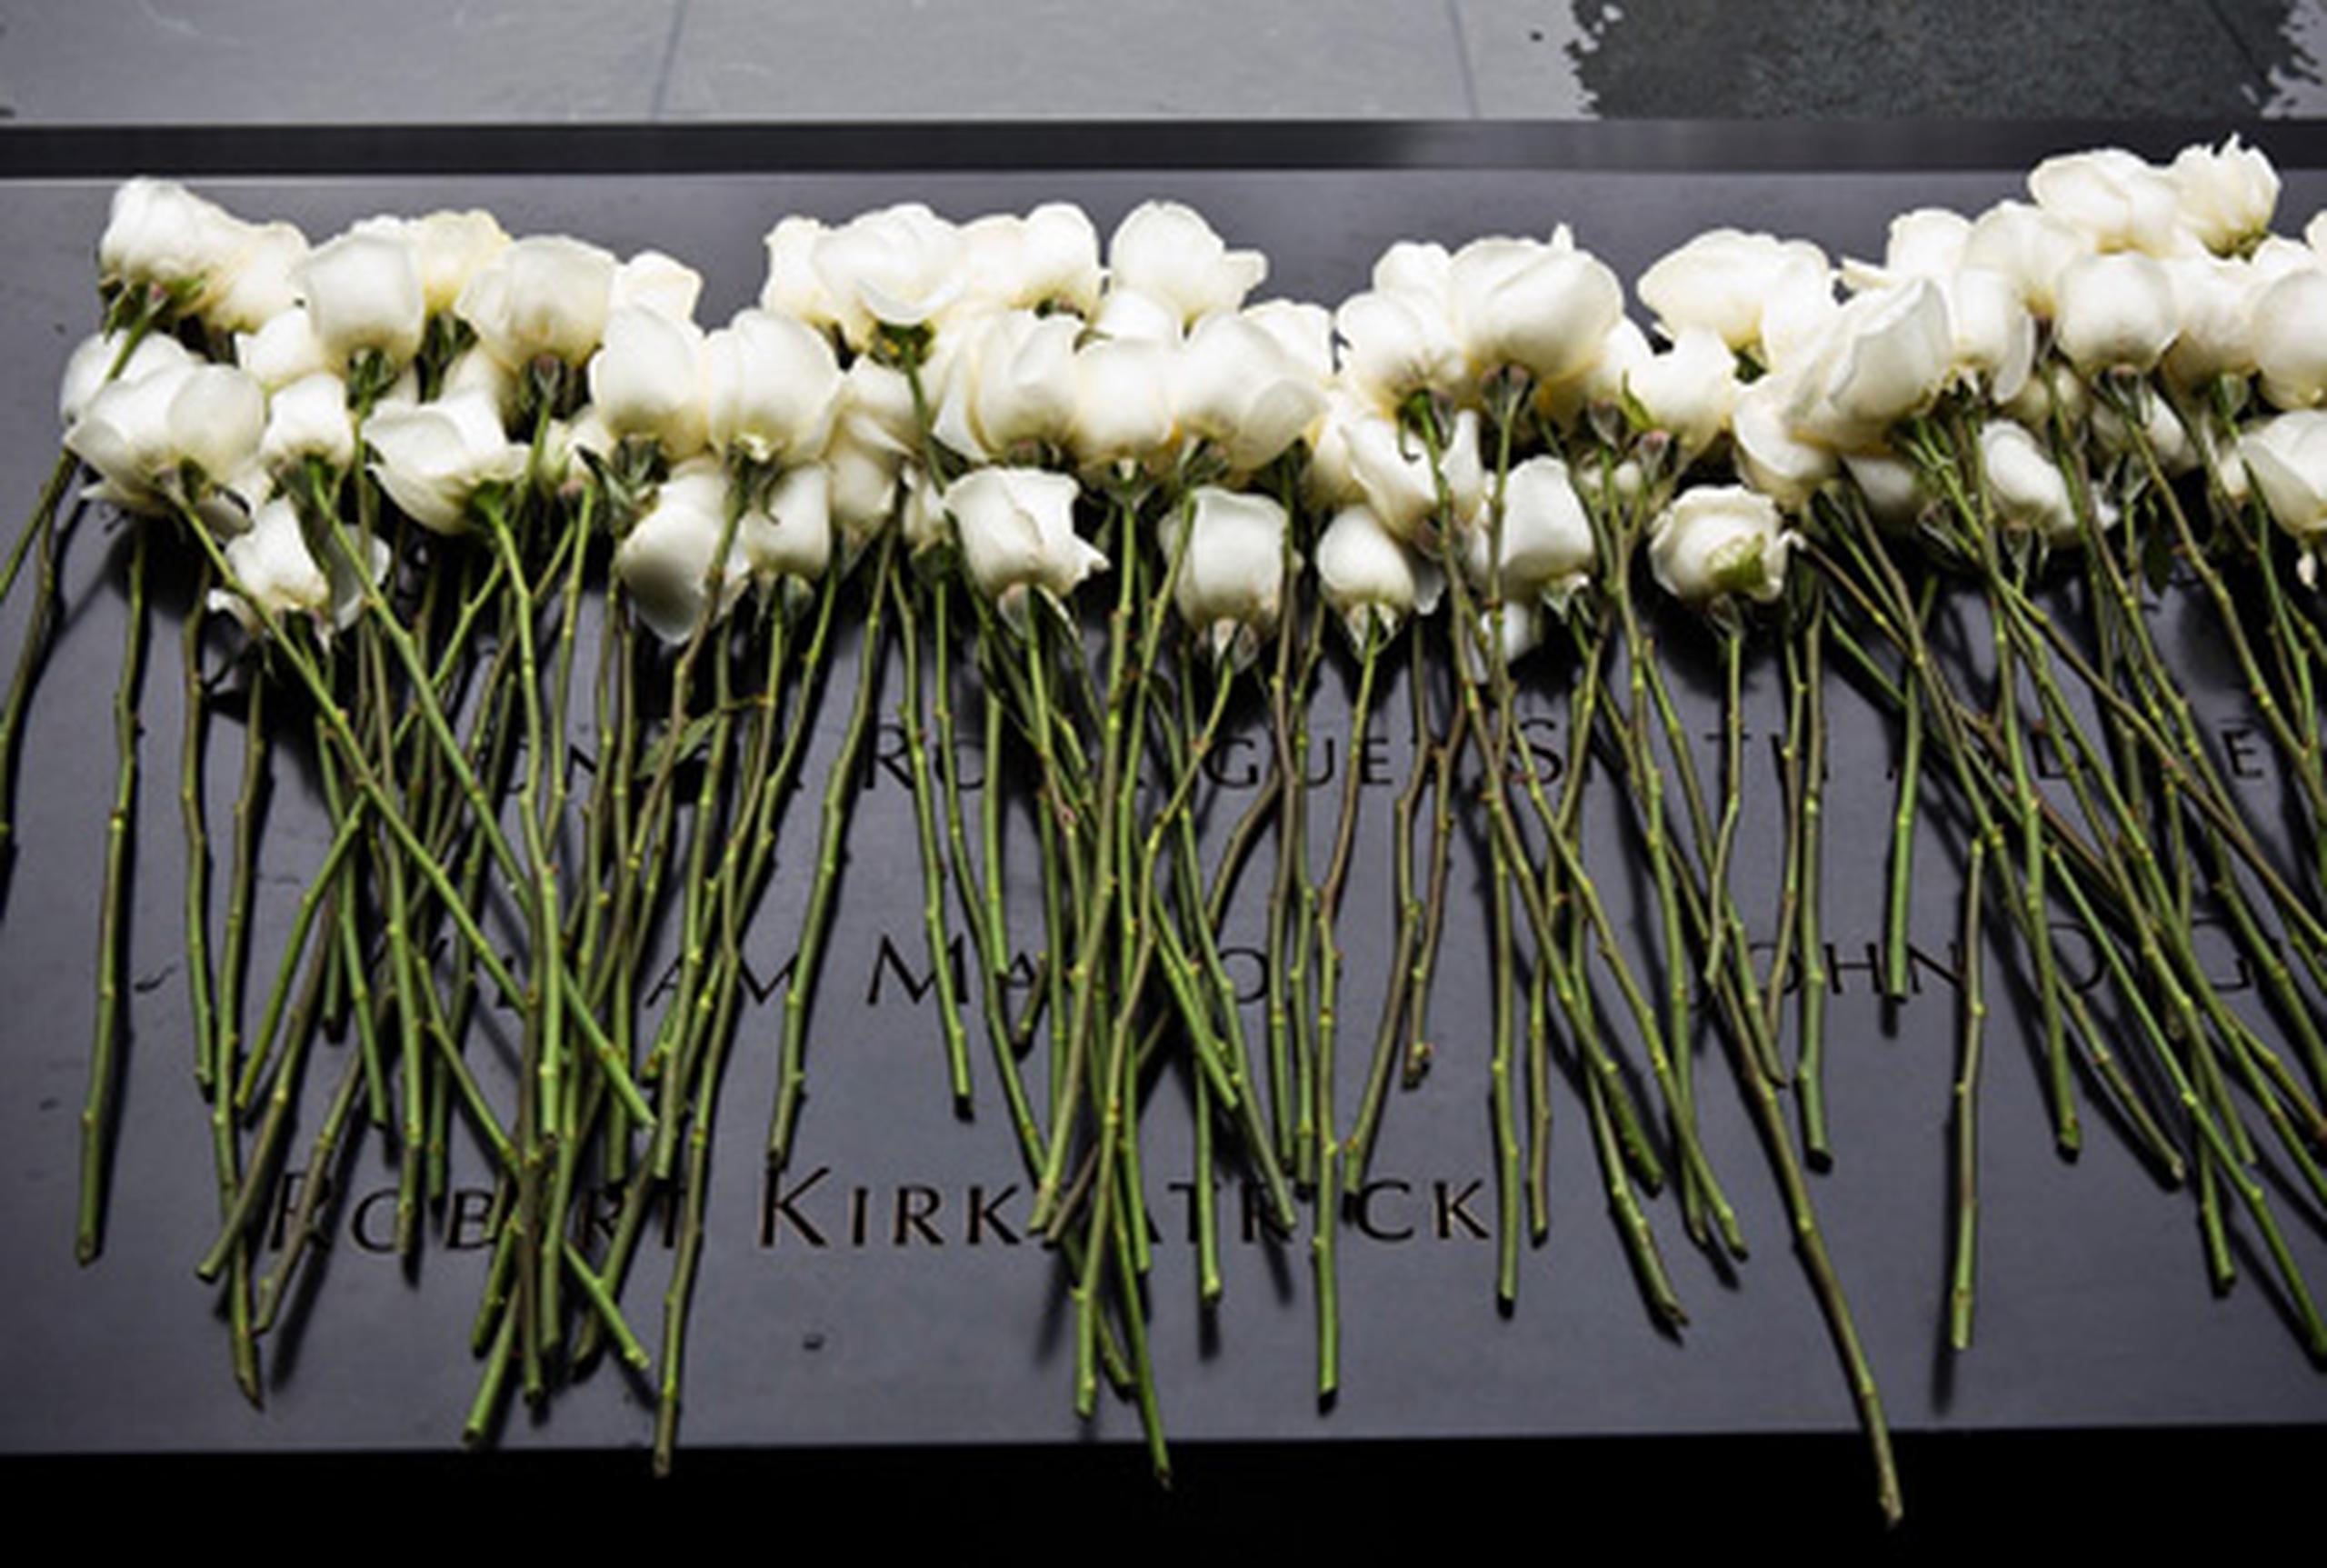 Ese ataque tuvo lugar ocho años antes de que terroristas suicidas de Al Qaeda estrellaran dos aviones comerciales contra las Torres Gemelas el 11 de septiembre de 2001, en unos atentados que costaron la vida a casi 3.000 personas. (AFP/Andrew Burton)